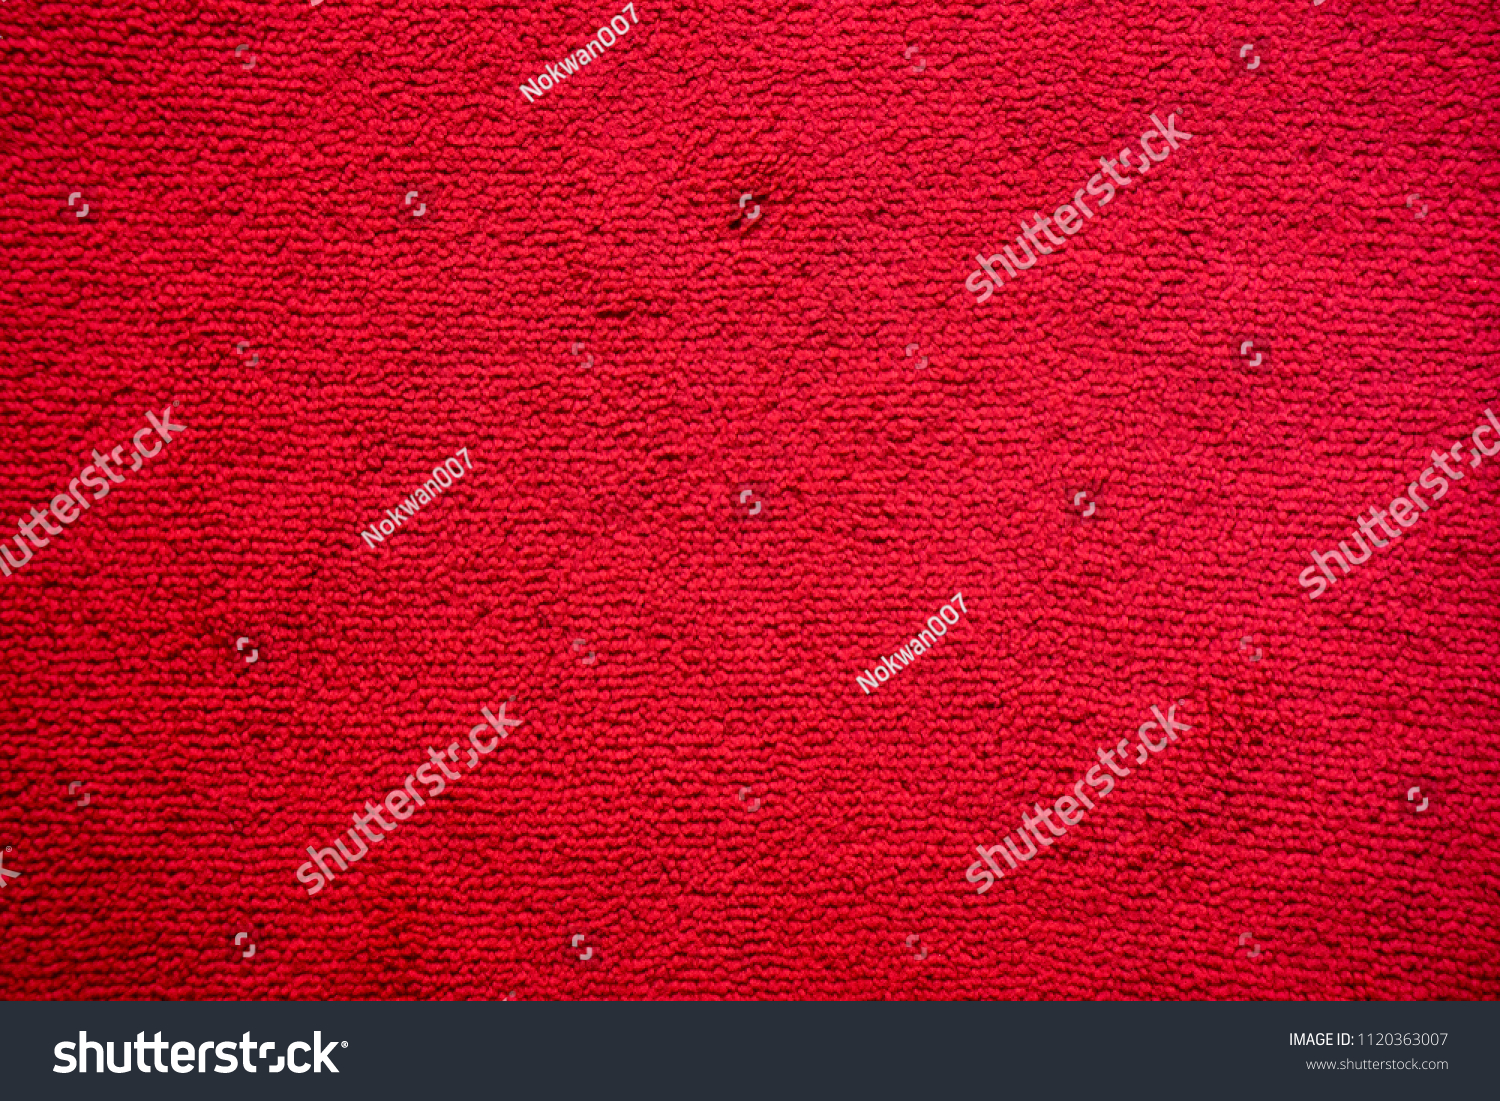 Full frame of red floor short hair carpet, solid burgundy velvet writing wallpaper, fine red and black pattern texture background. #1120363007